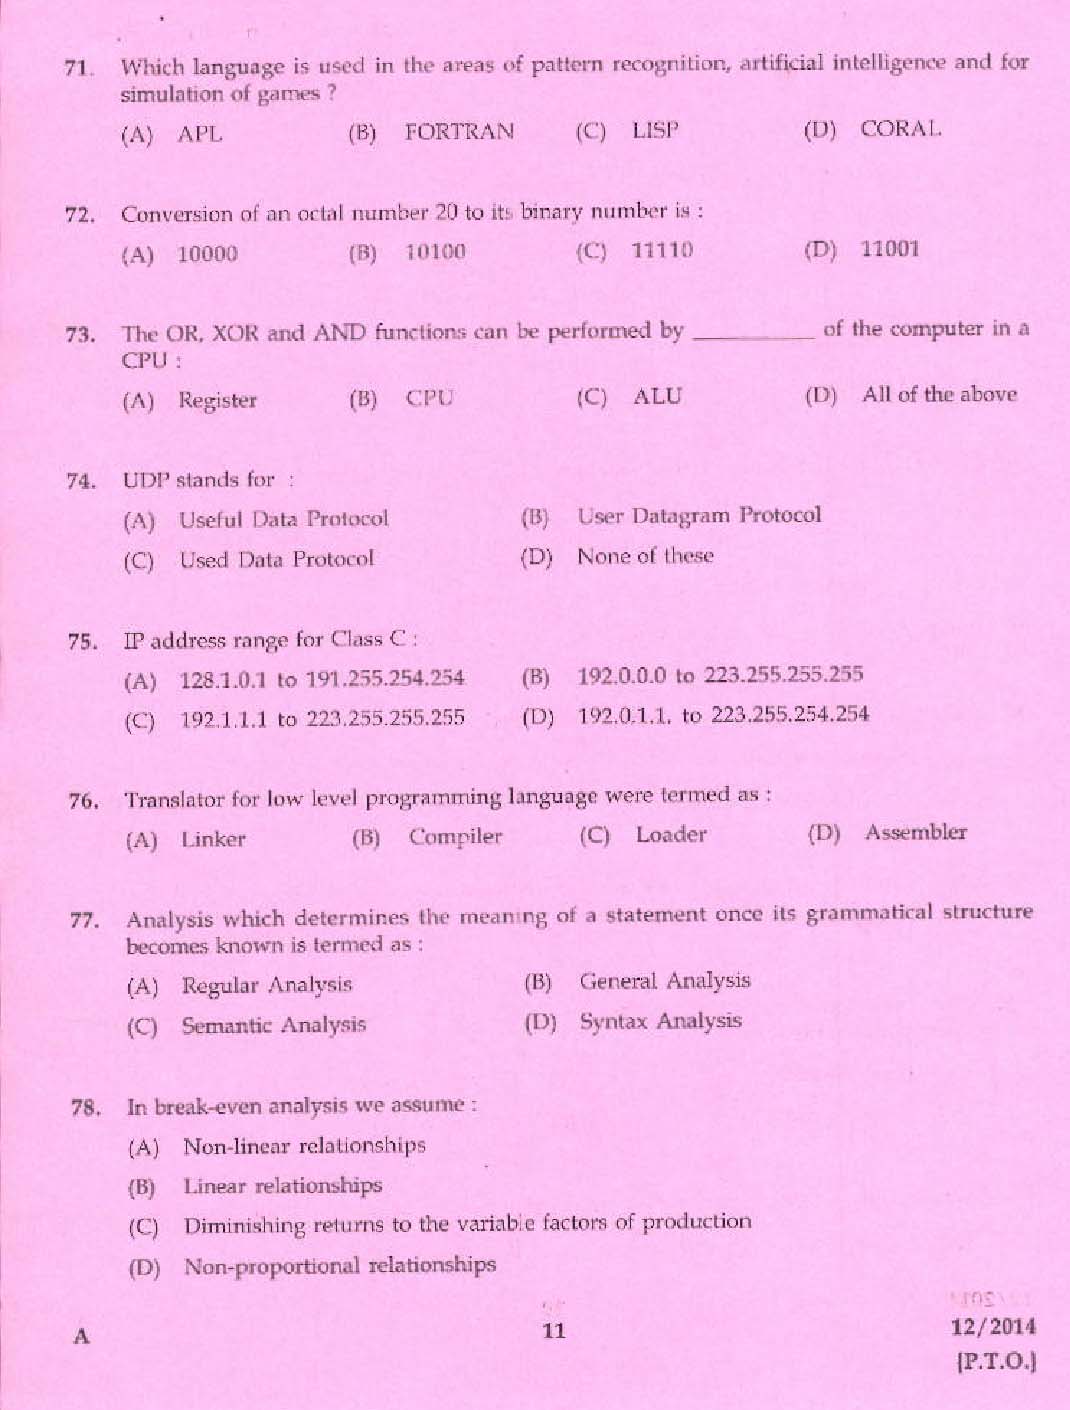 KPSC Vocational Teacher Exam 2014 Code 122014 9